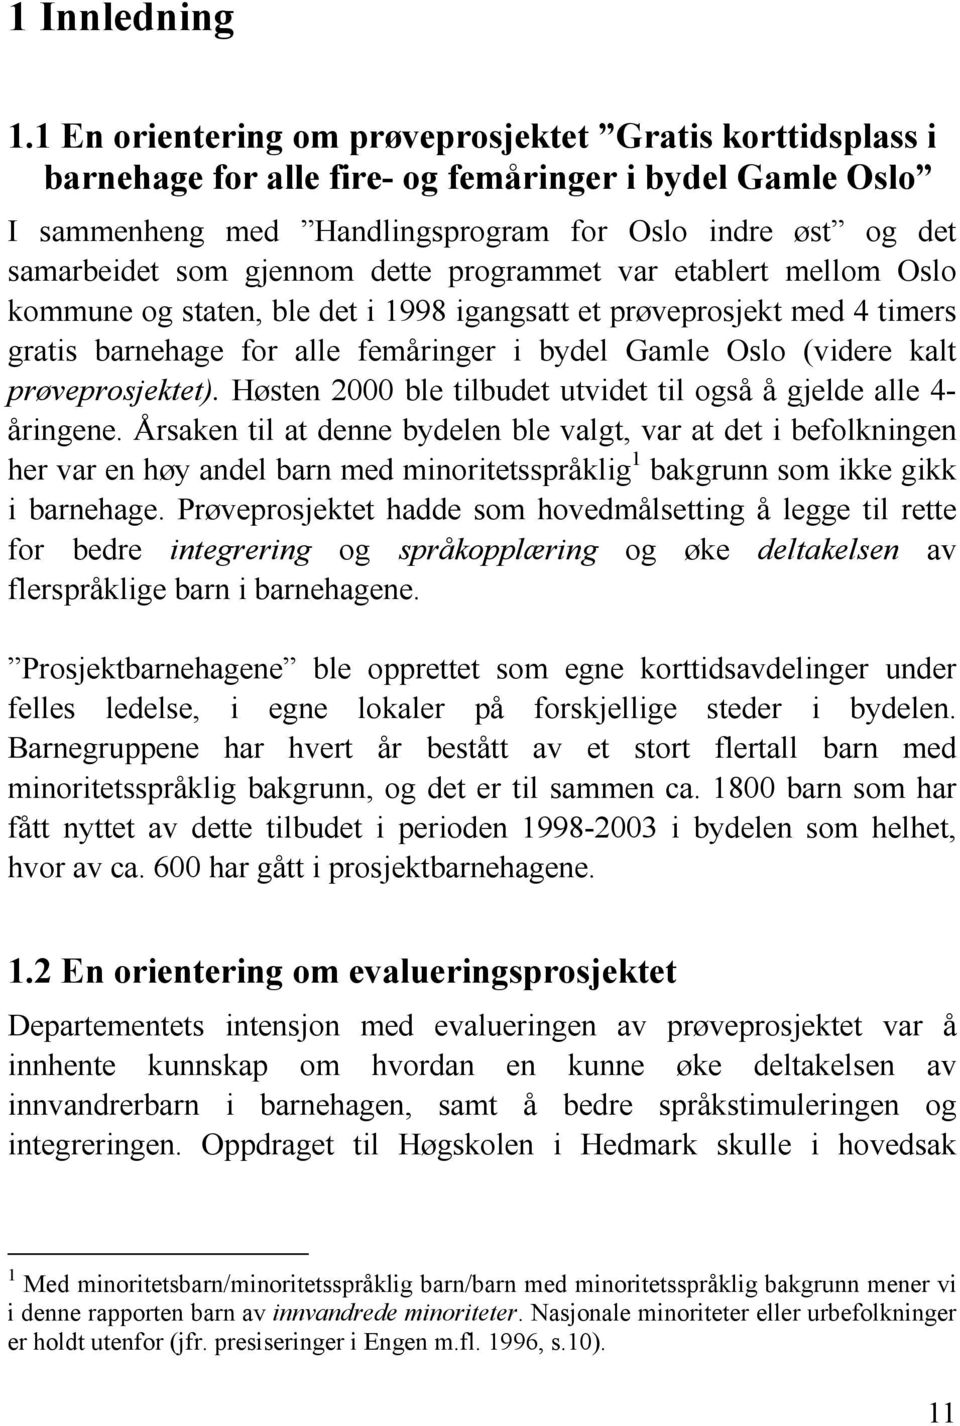 gjennom dette programmet var etablert mellom Oslo kommune og staten, ble det i 1998 igangsatt et prøveprosjekt med 4 timers gratis barnehage for alle femåringer i bydel Gamle Oslo (videre kalt